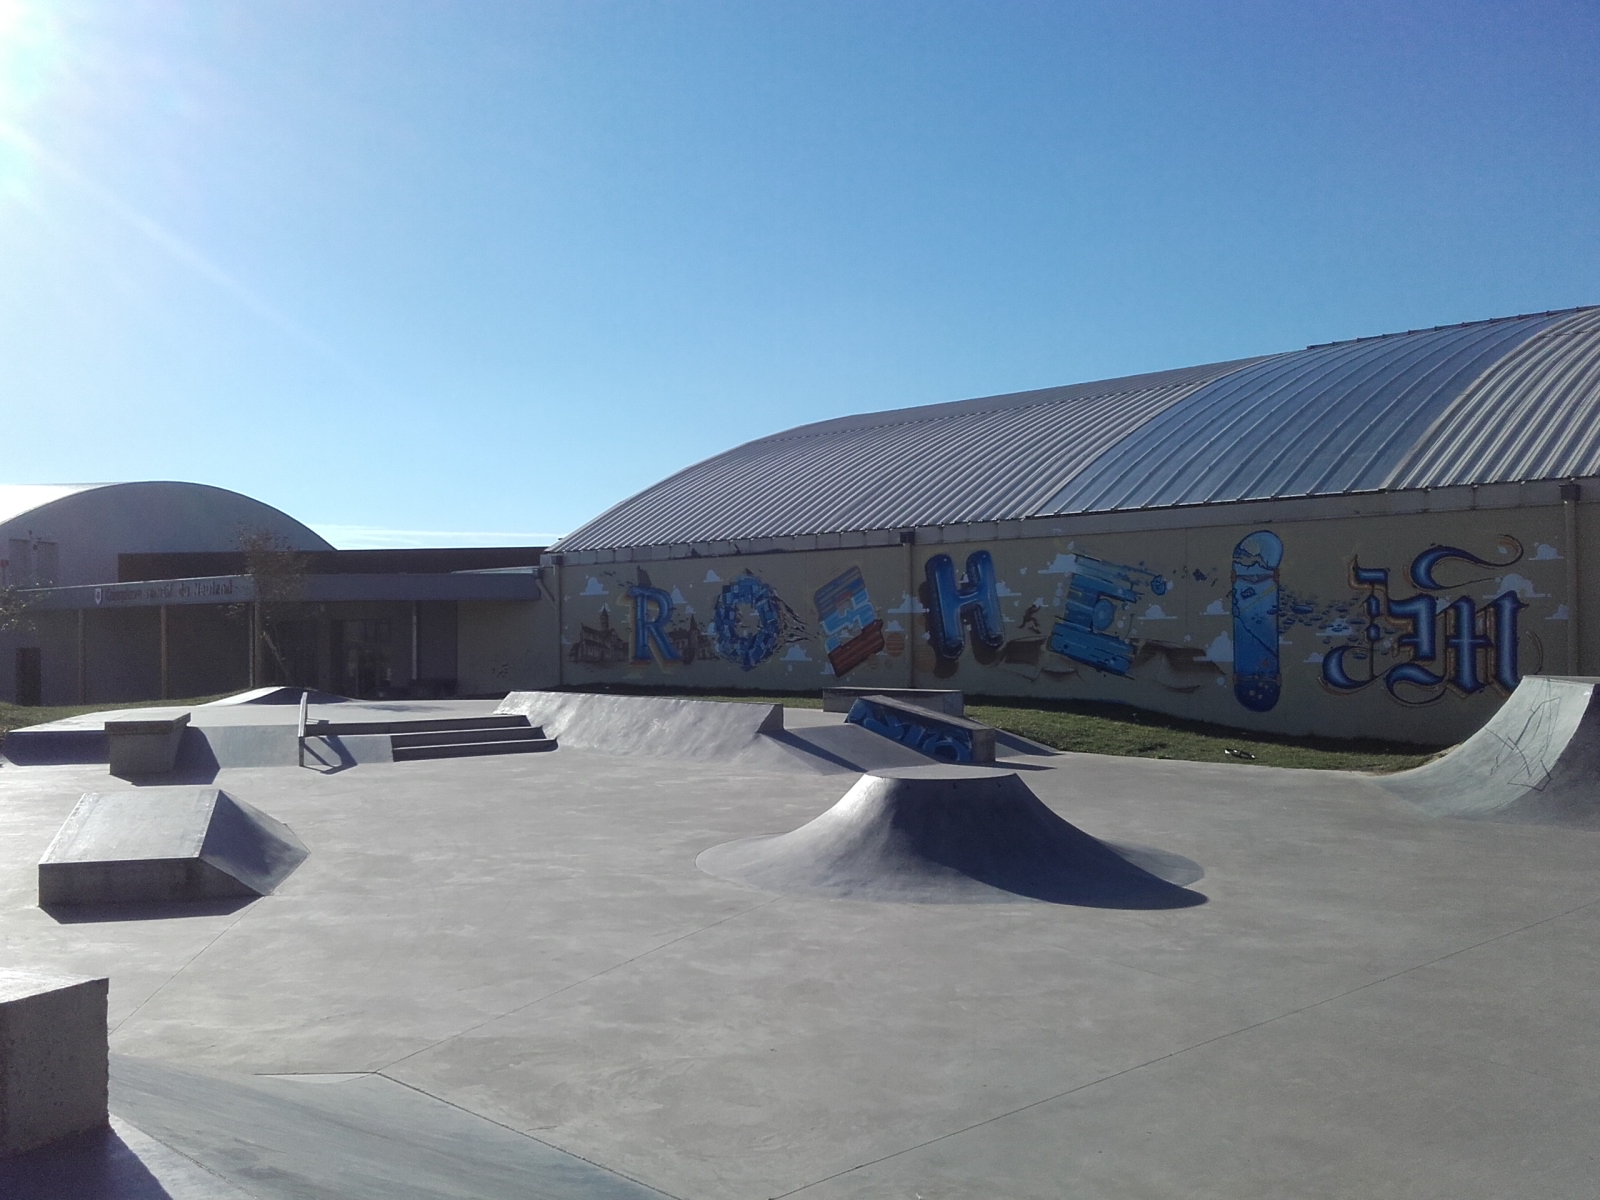 Skate park "beton" Rosheim Alsace